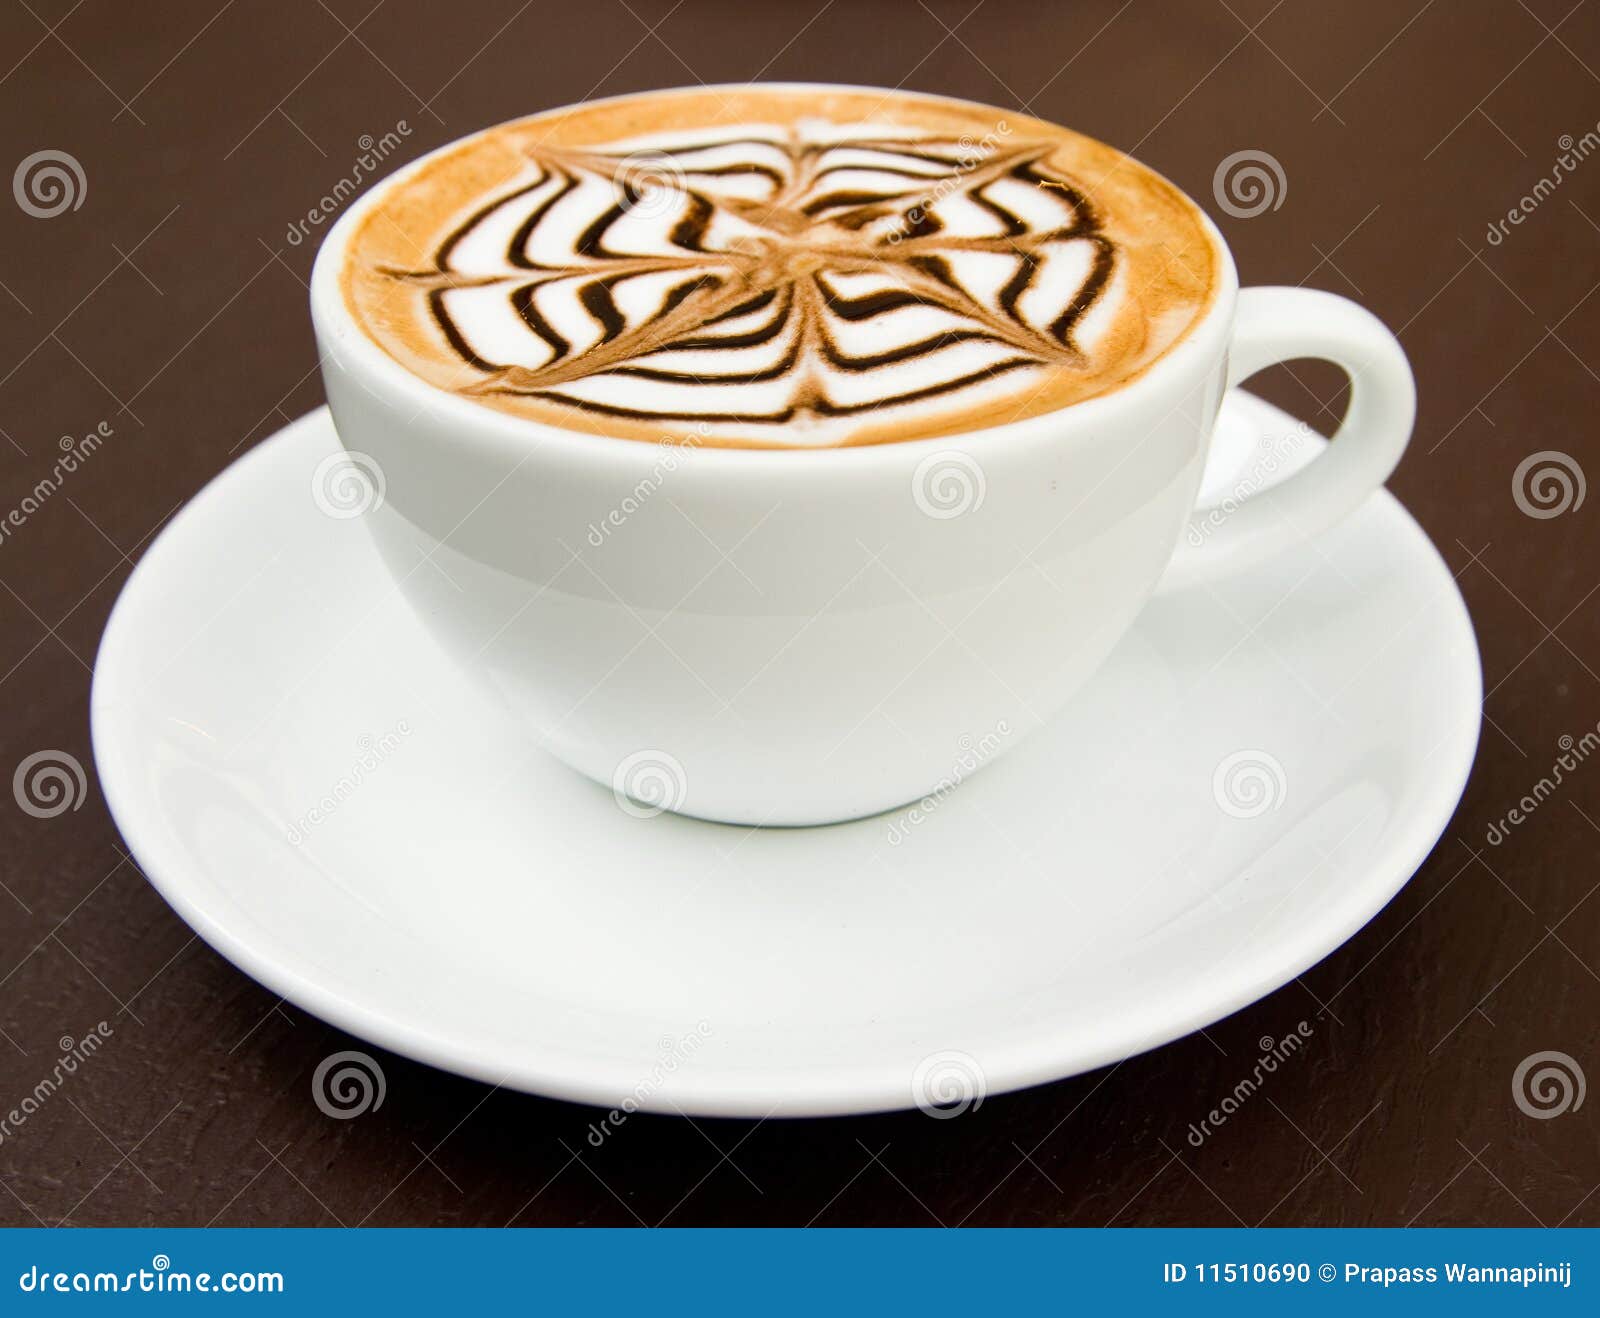 cup-latte-art-hot-coffee-11510690.jpg